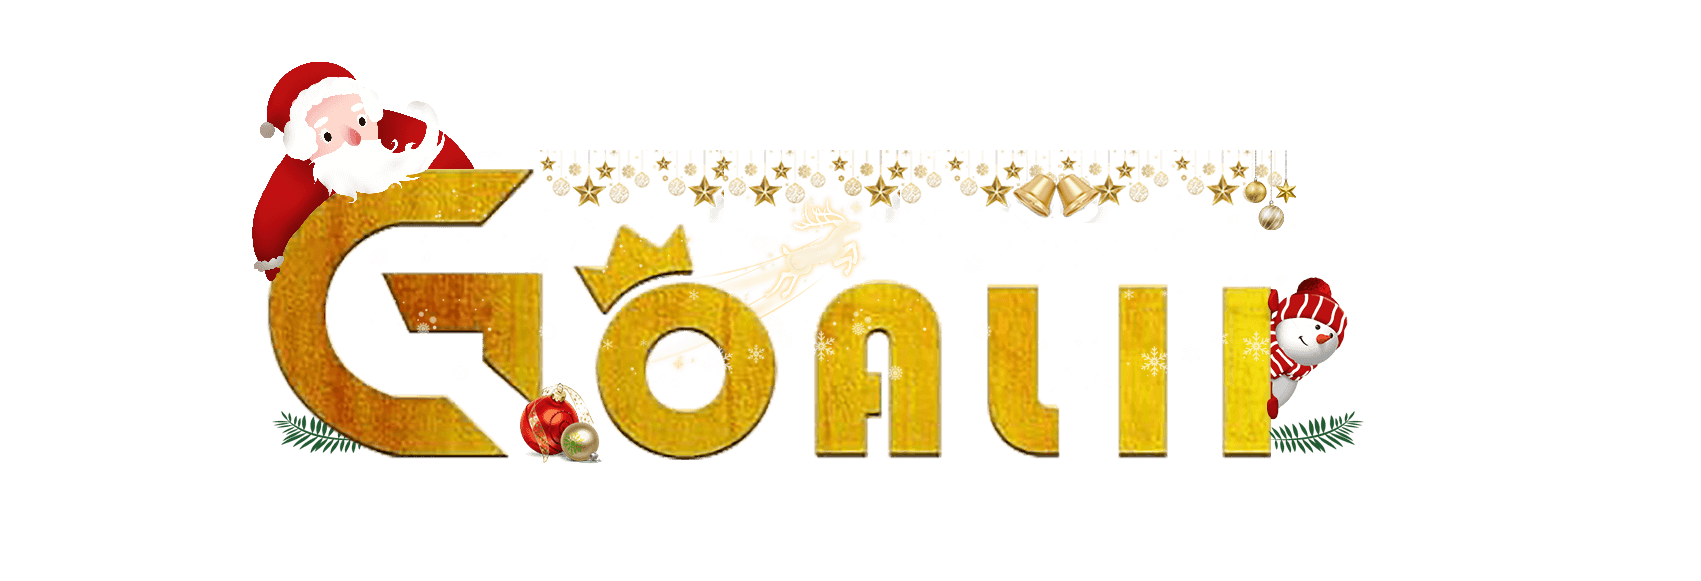 goall11_official-logo_final